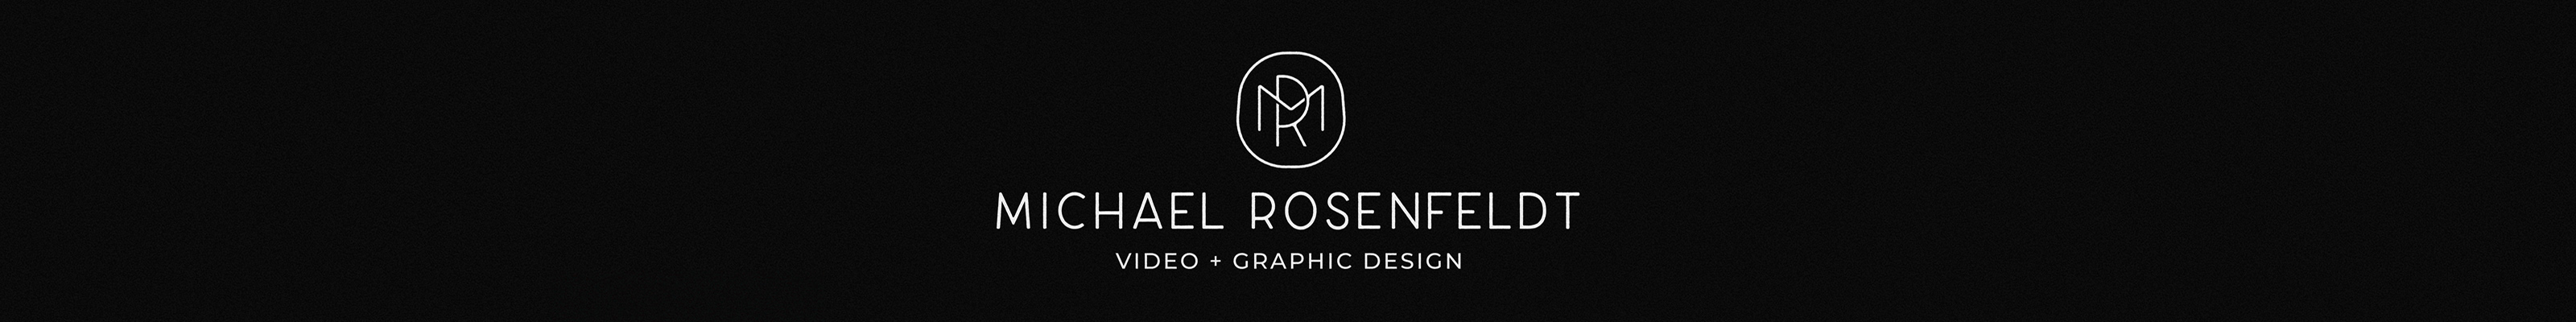 Michael Rosenfeldt profil başlığı